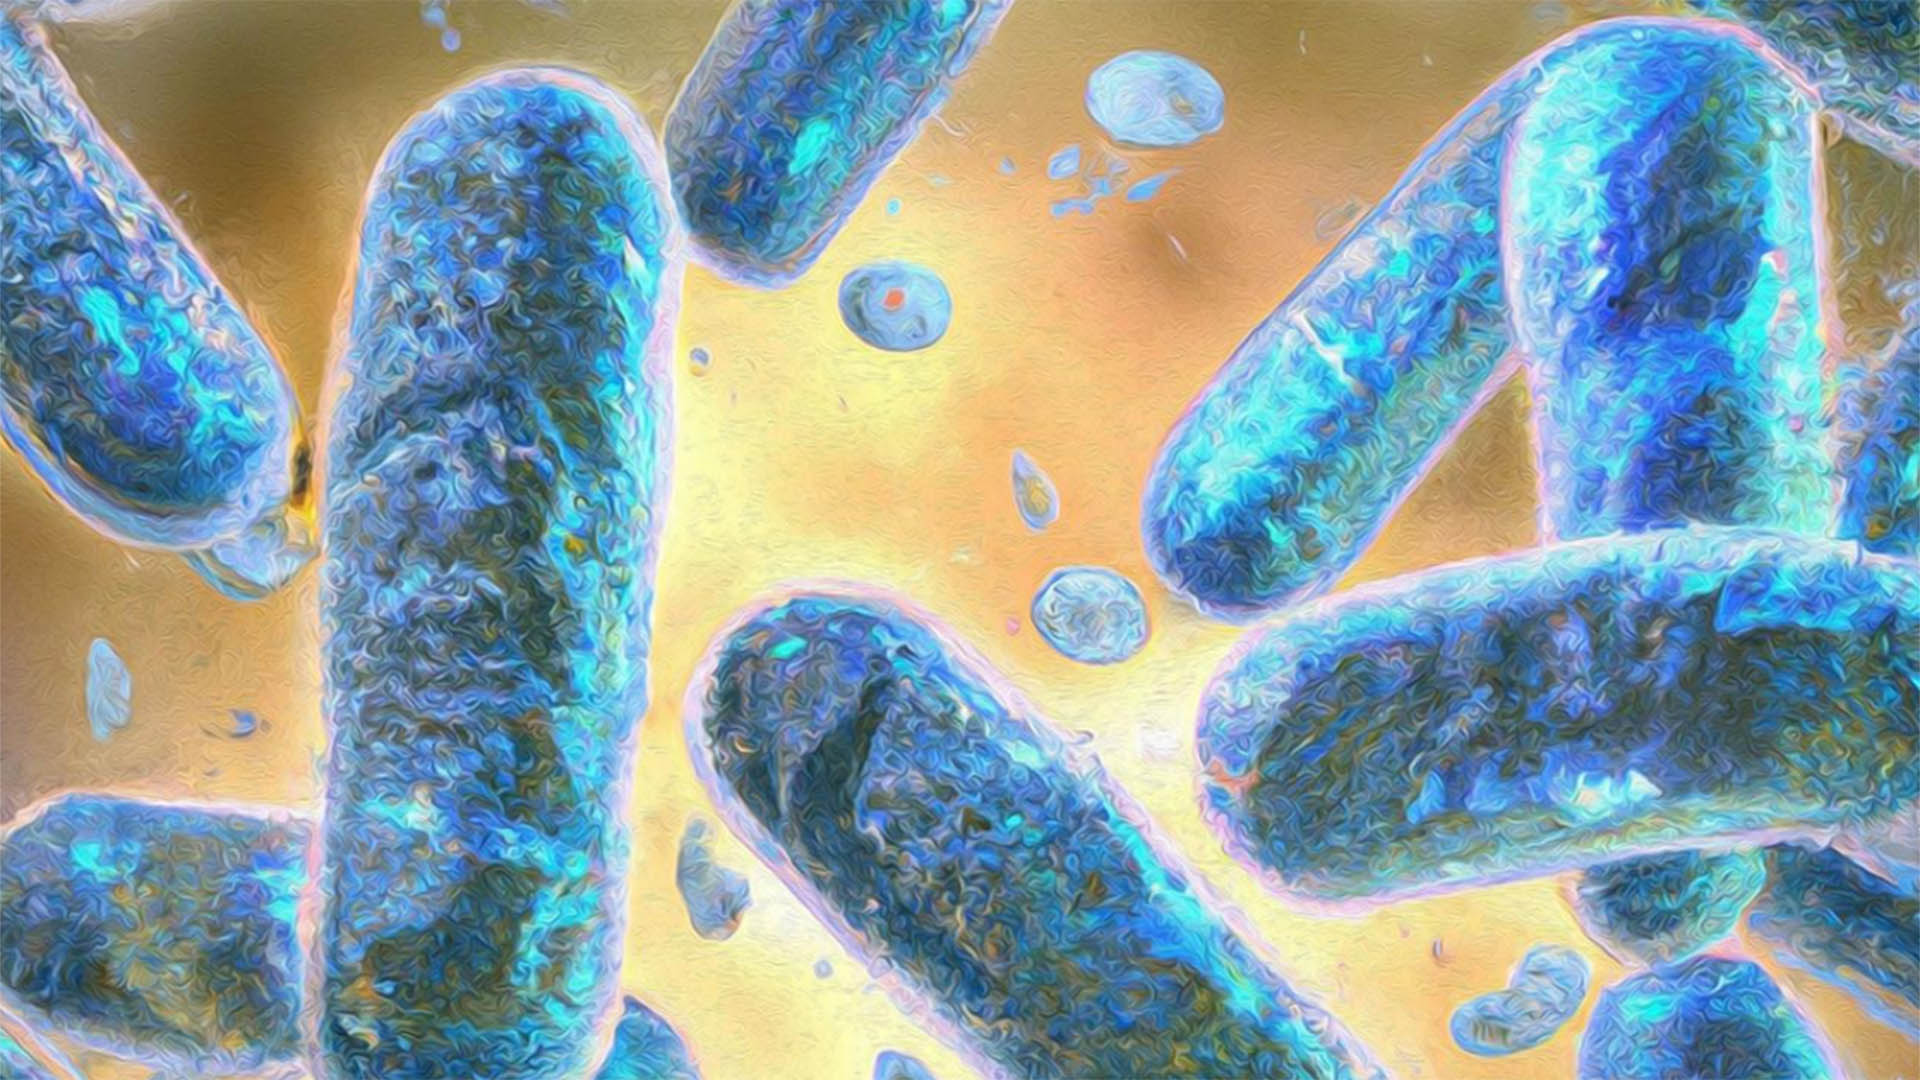 Científicos de la UC San Diego logran retrasar el envejecimiento celular mediante ingeniería y biología sintética